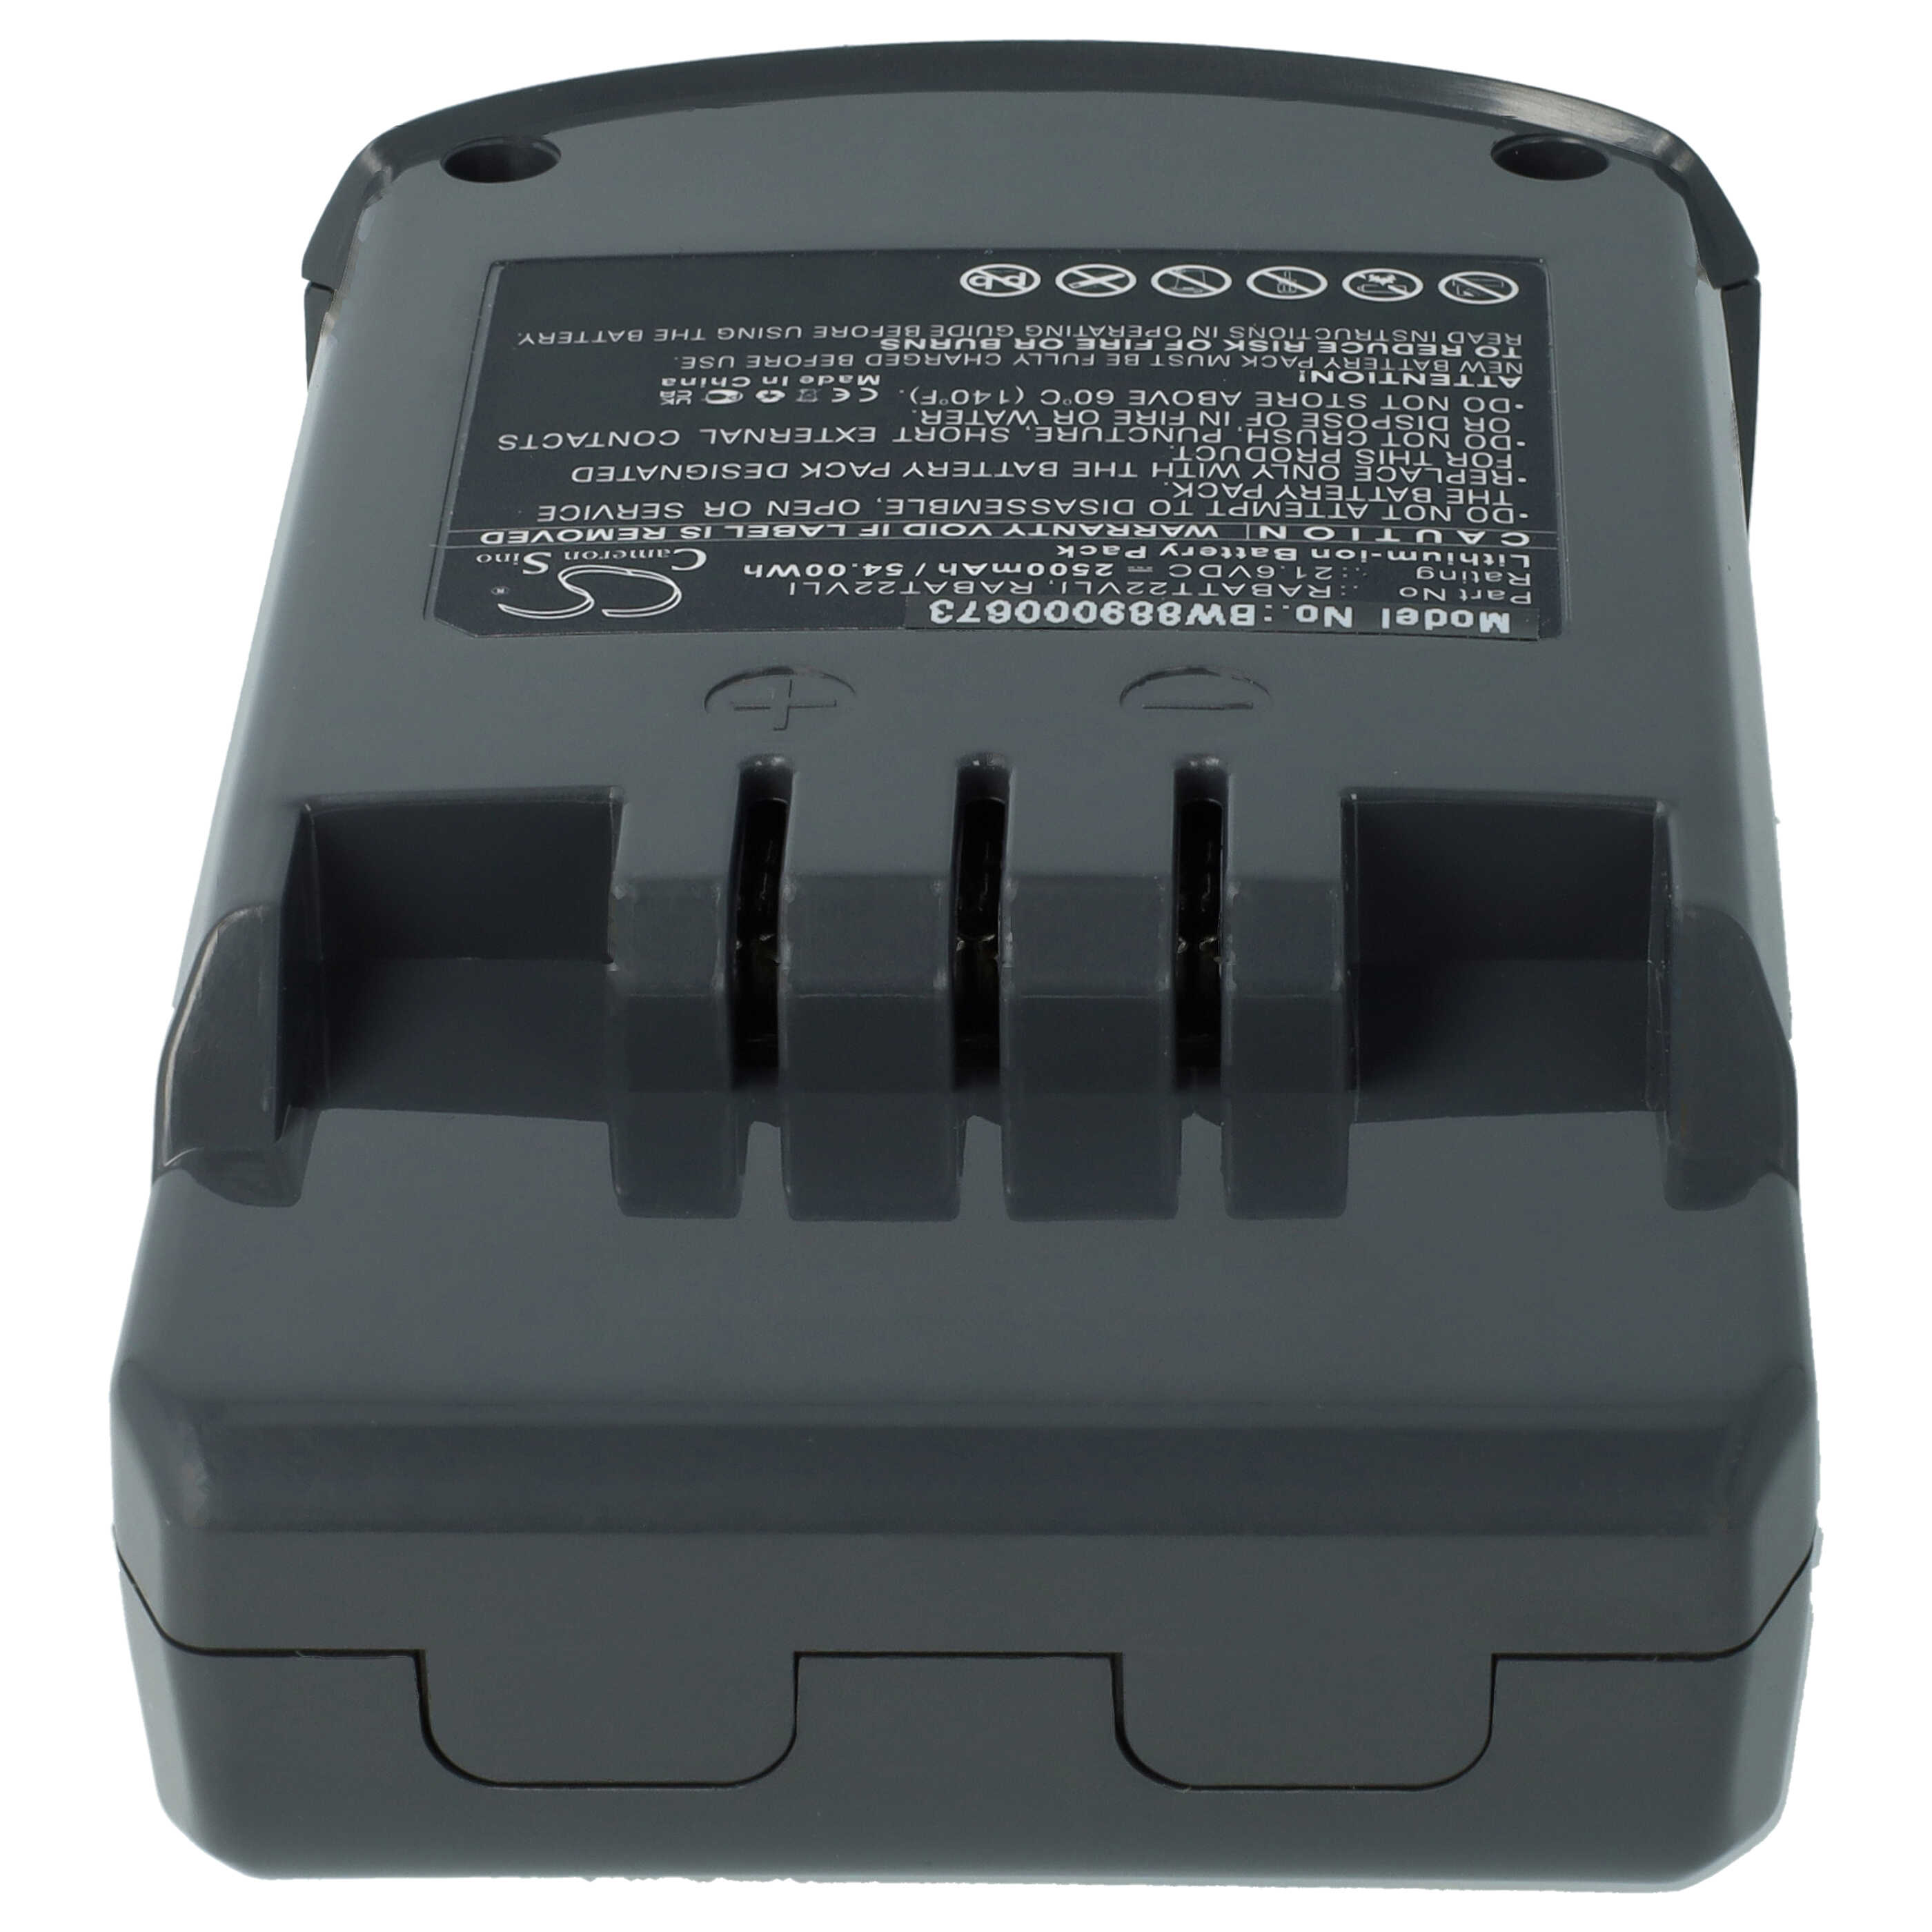 Batterie remplace Hoover RABAT22VLI, 6.20.40.01-0, 48023809 pour aspirateur - 2500mAh 21,6V Li-ion